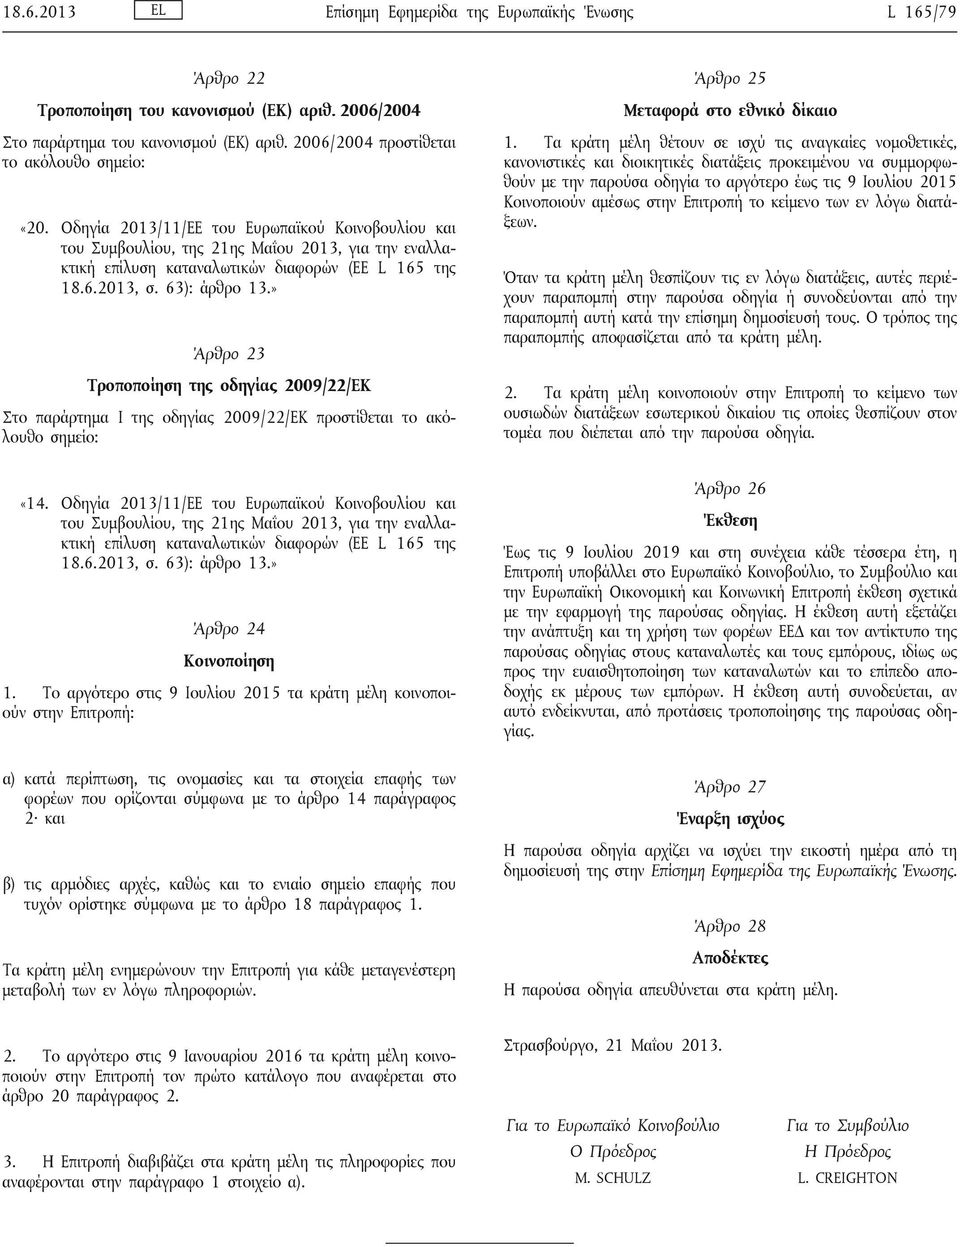 Οδηγία 2013/11/ΕΕ του Ευρωπαϊκού Κοινοβουλίου και του Συμβουλίου, της 21ης Μαΐου 2013, για την εναλλακτική επίλυση καταναλωτικών διαφορών (ΕΕ L 165 της 18.6.2013, σ. 63): άρθρο 13.